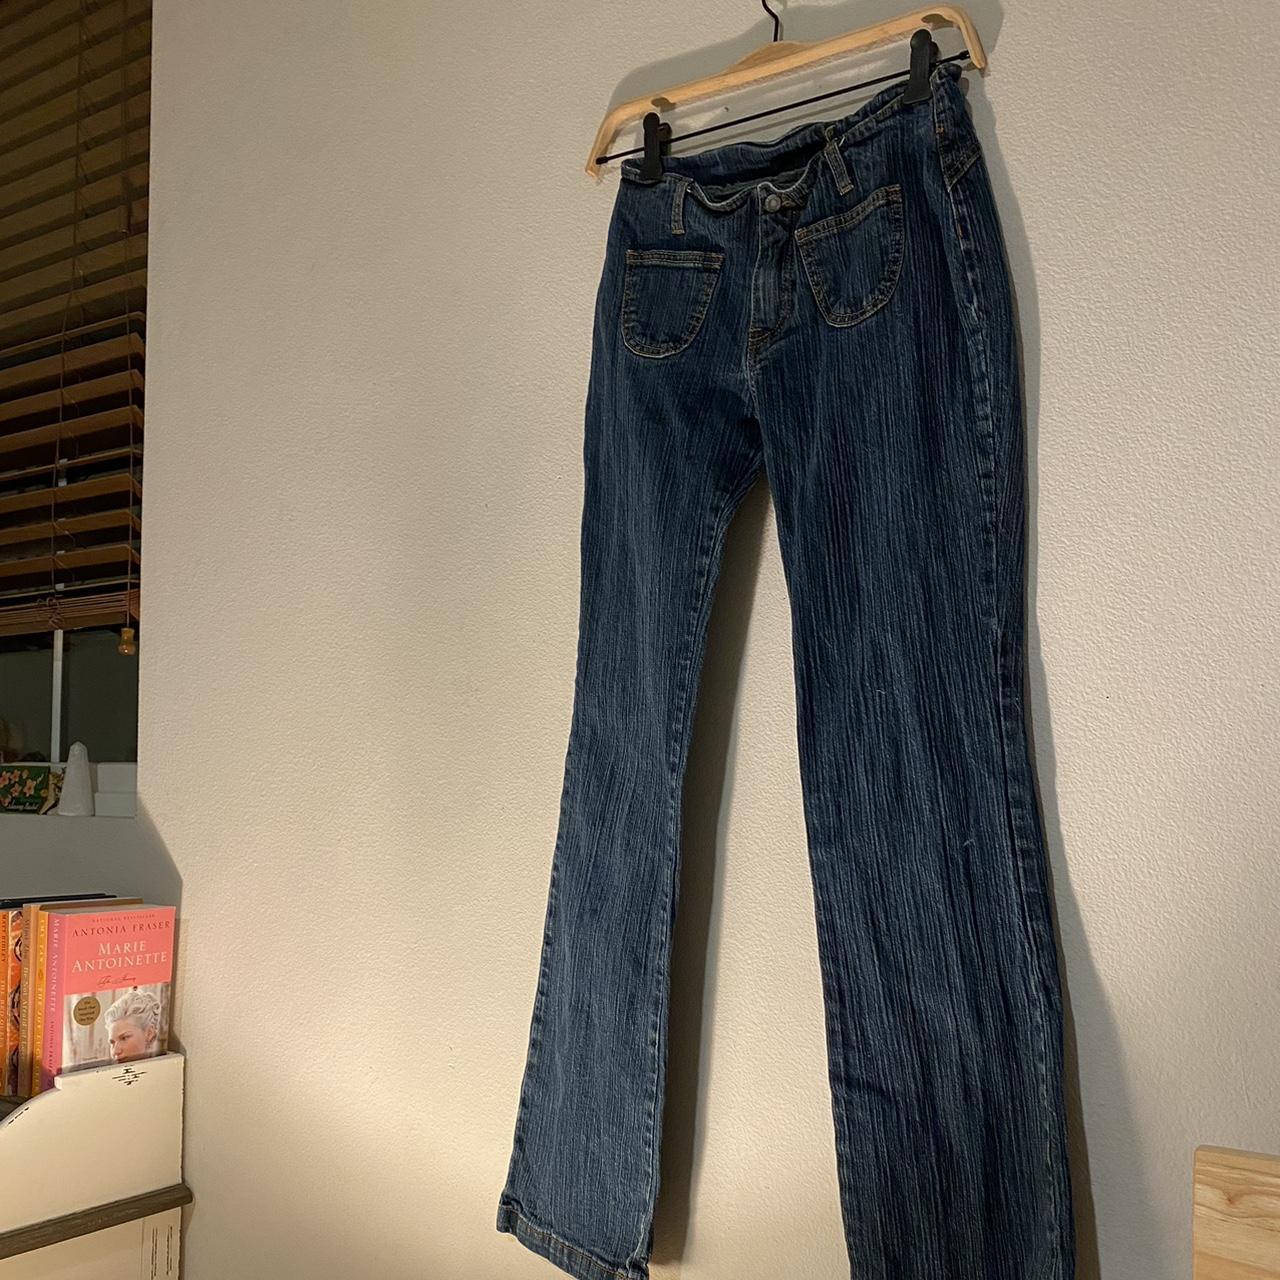 Brandy Melville Women's Jeans